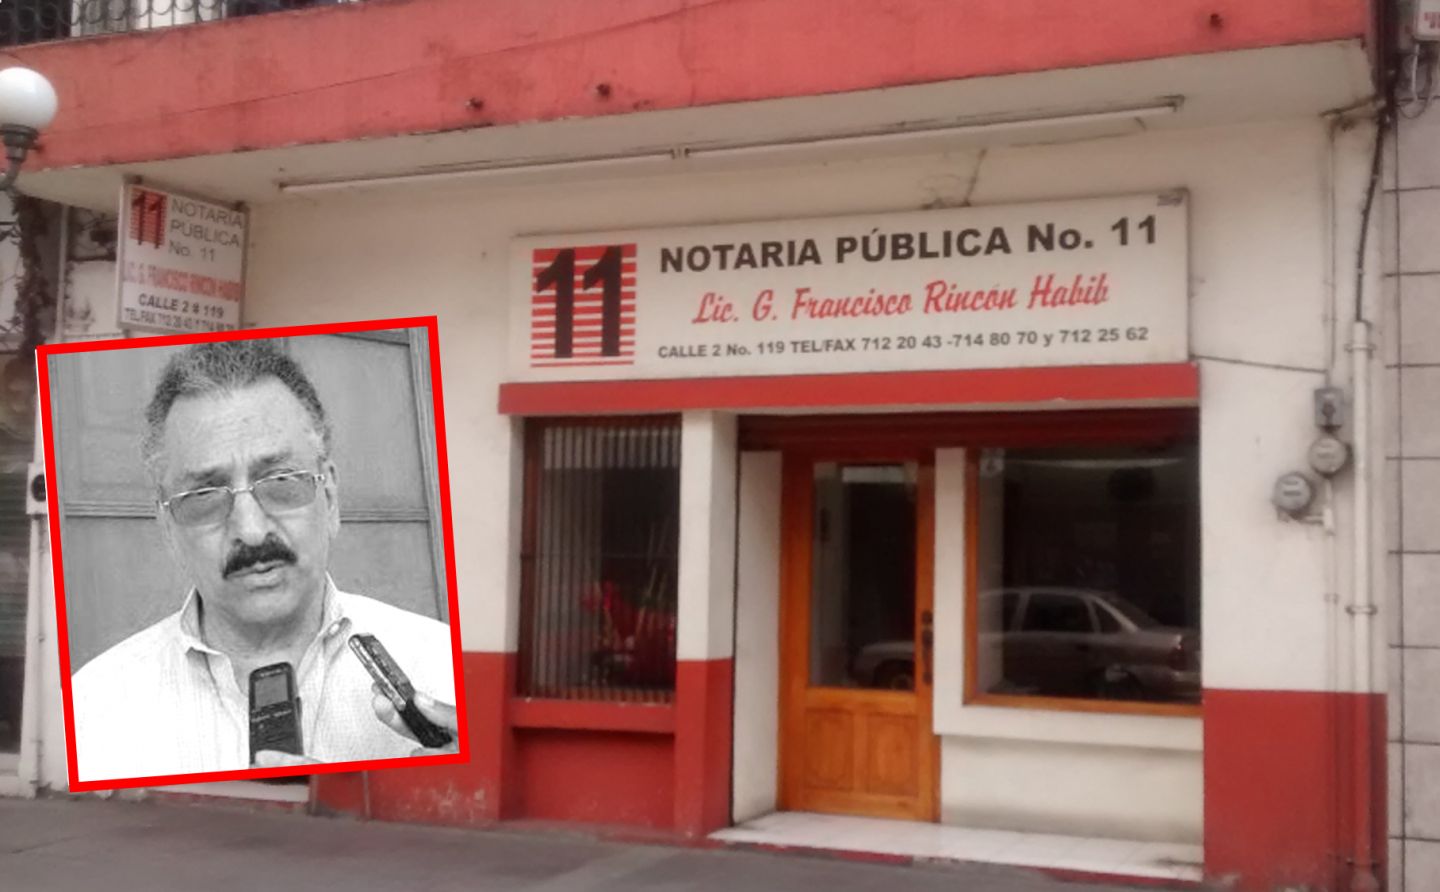 Señalan a titular de Notaría 11 en Córdoba por fraude; vende propiedad y nunca la entregó.